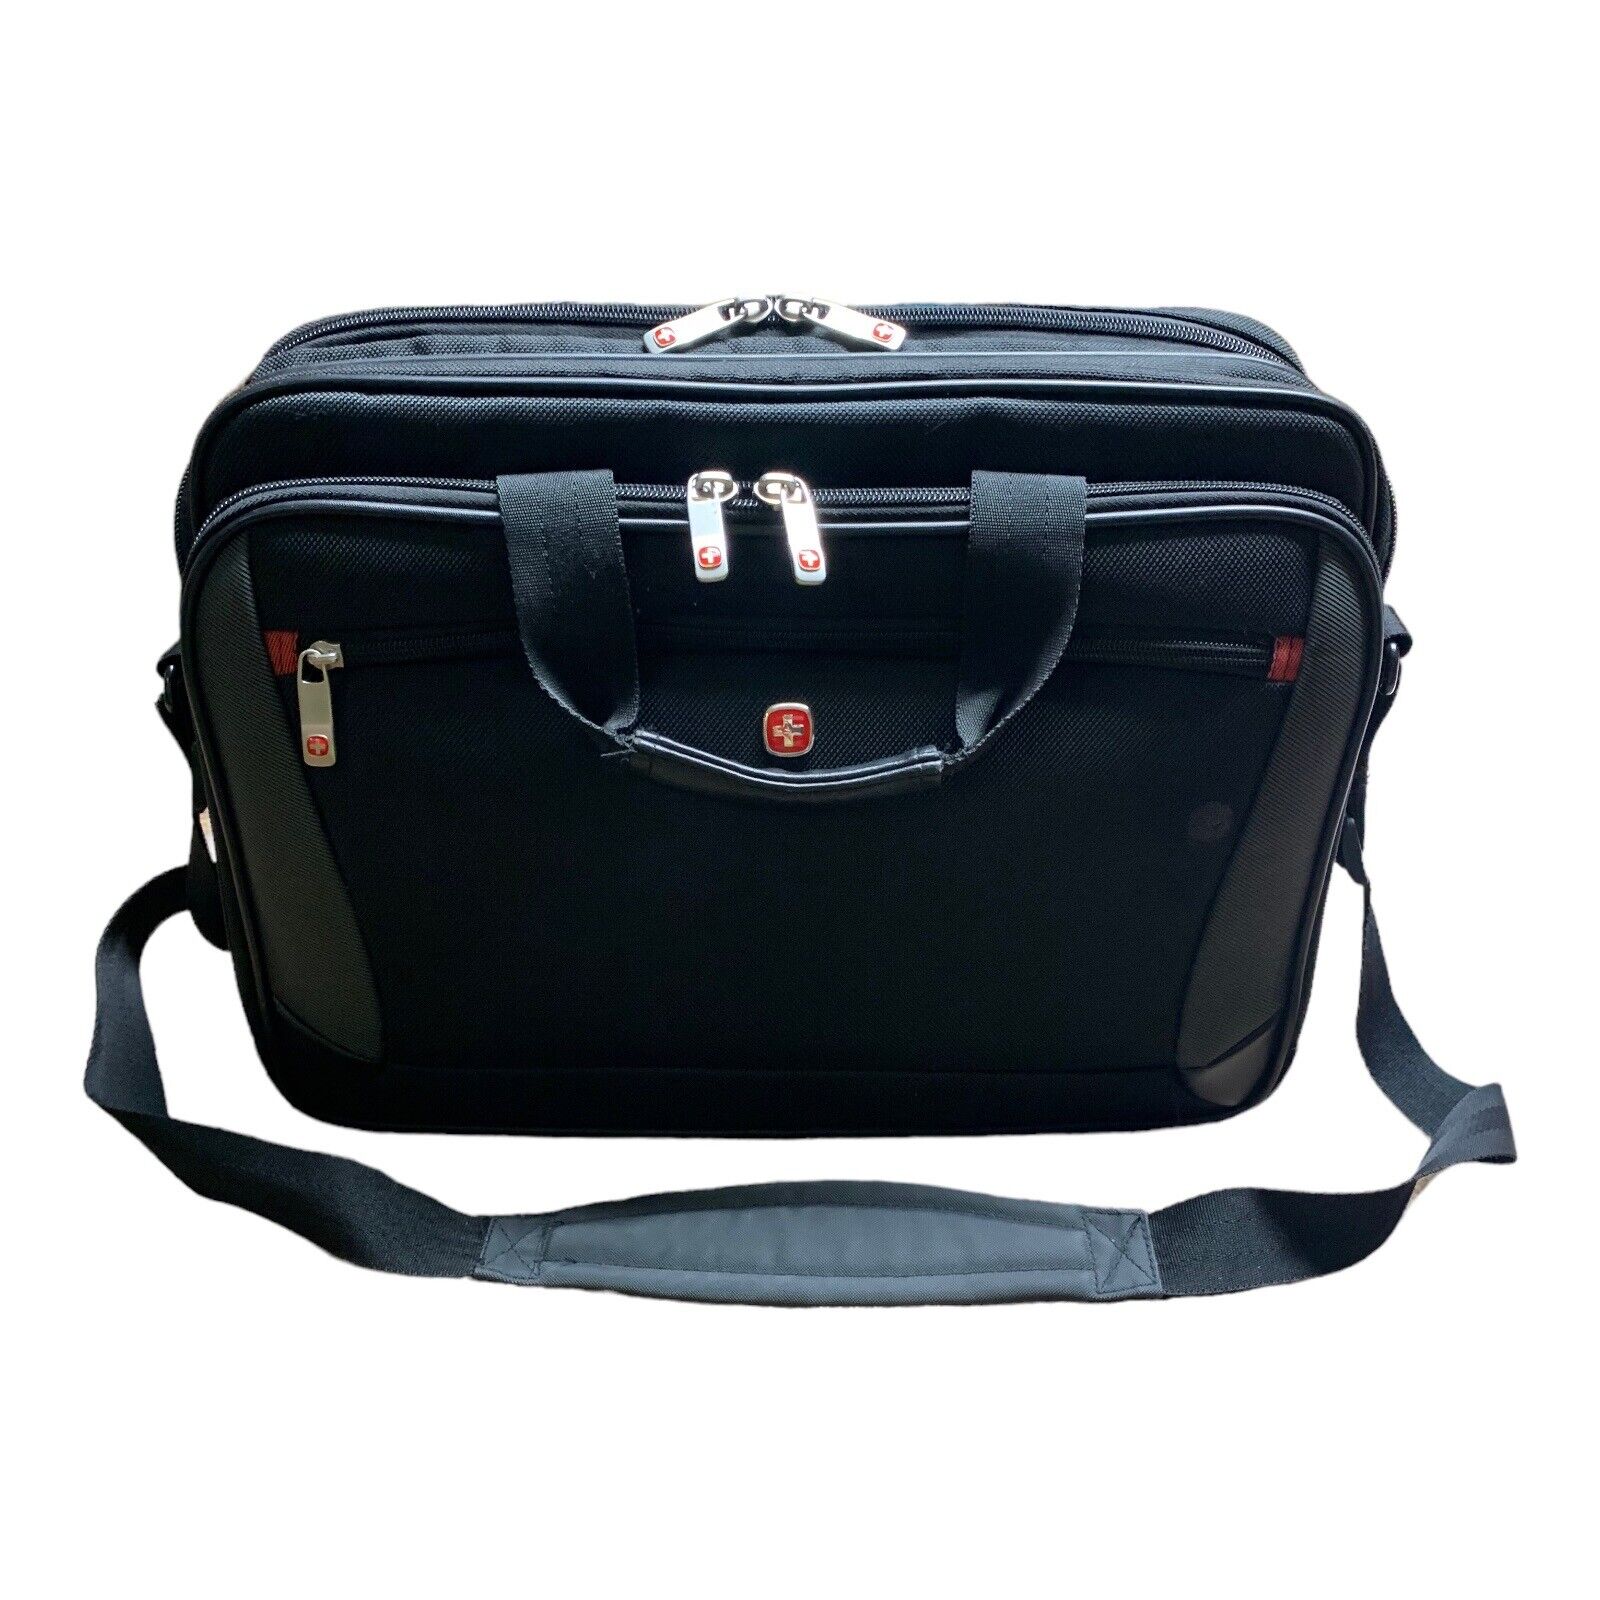 Wenger SwissGear Mainframe Bag Briefcase Black Handles Shoulder Strap